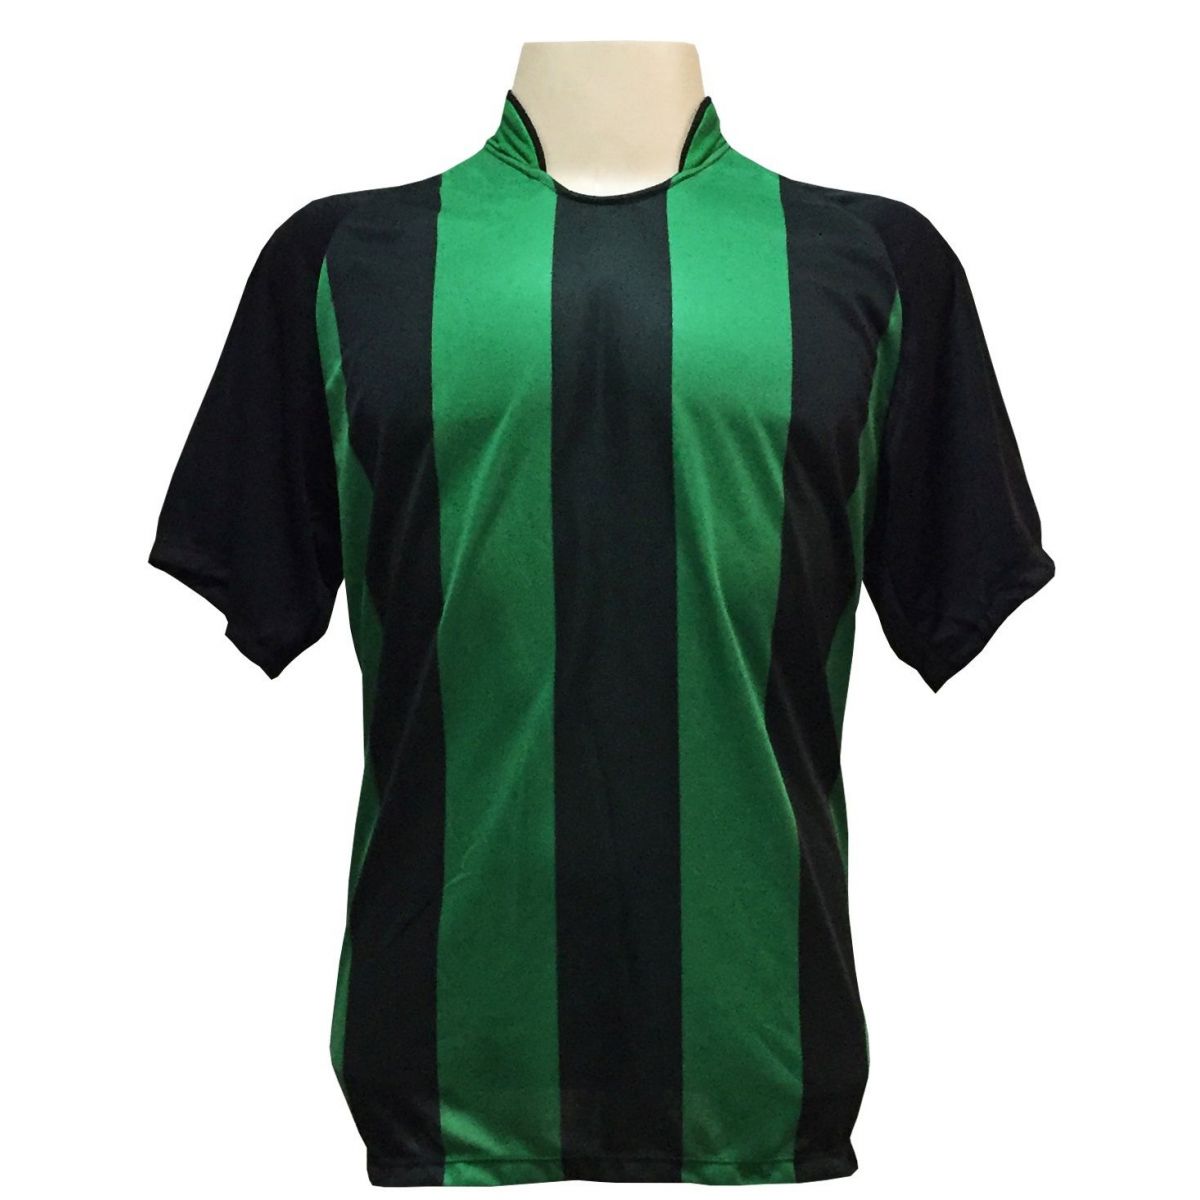 Uniforme Esportivo com 12 camisas modelo Milan Preto/Verde + 12 calções modelo Madrid + 1 Goleiro + Brindes